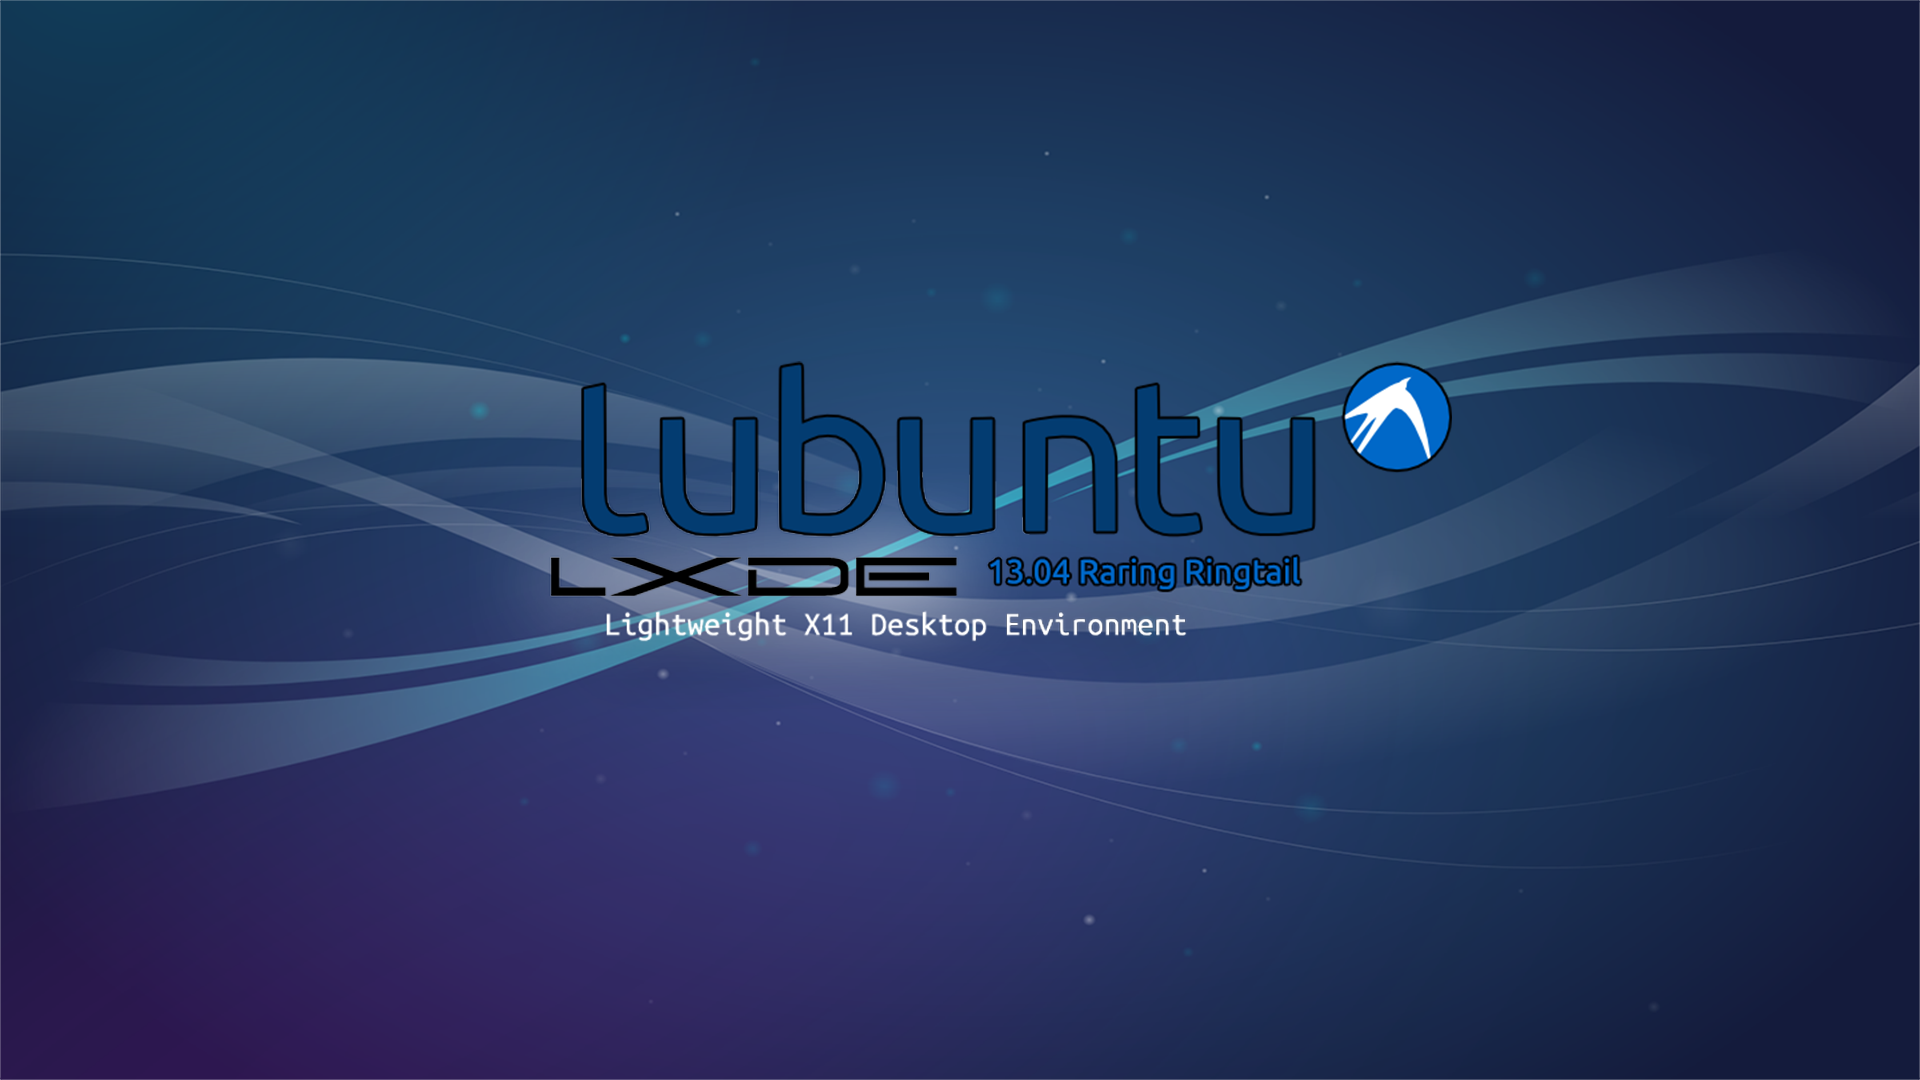 Lubuntu Raring Ringtail Wallpaper By Zenicstriker